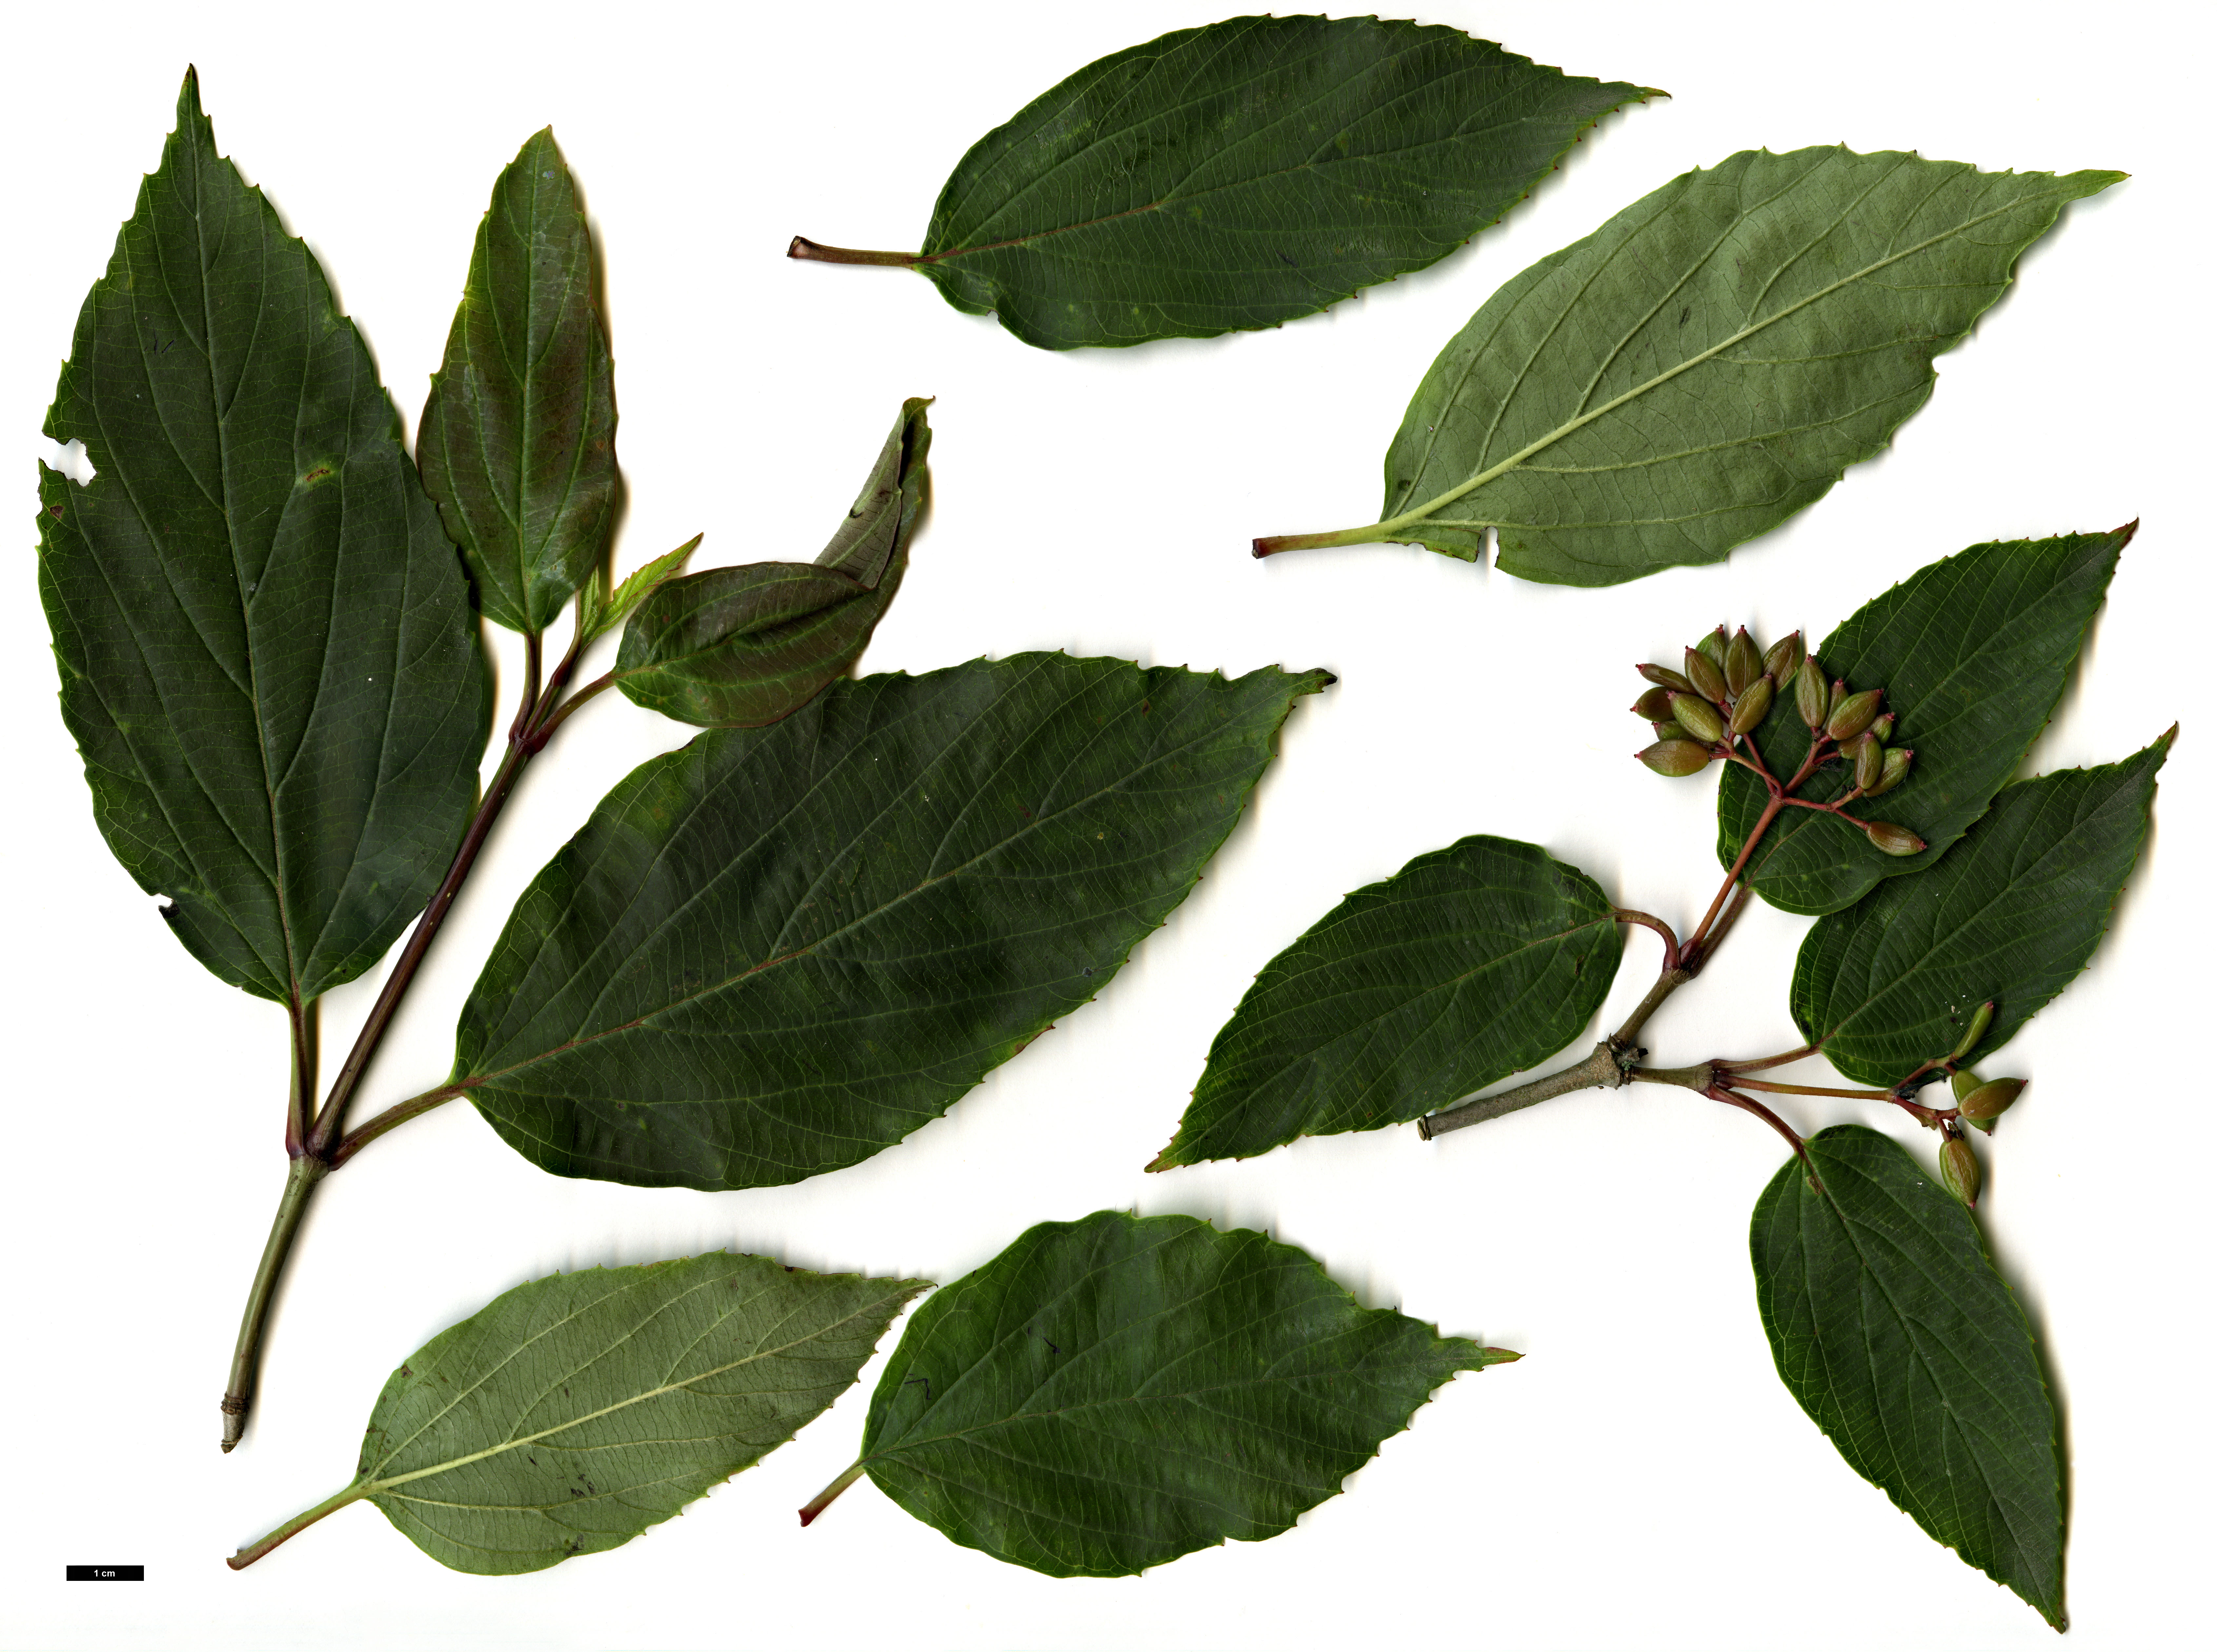 High resolution image: Family: Adoxaceae - Genus: Viburnum - Taxon: setigerum